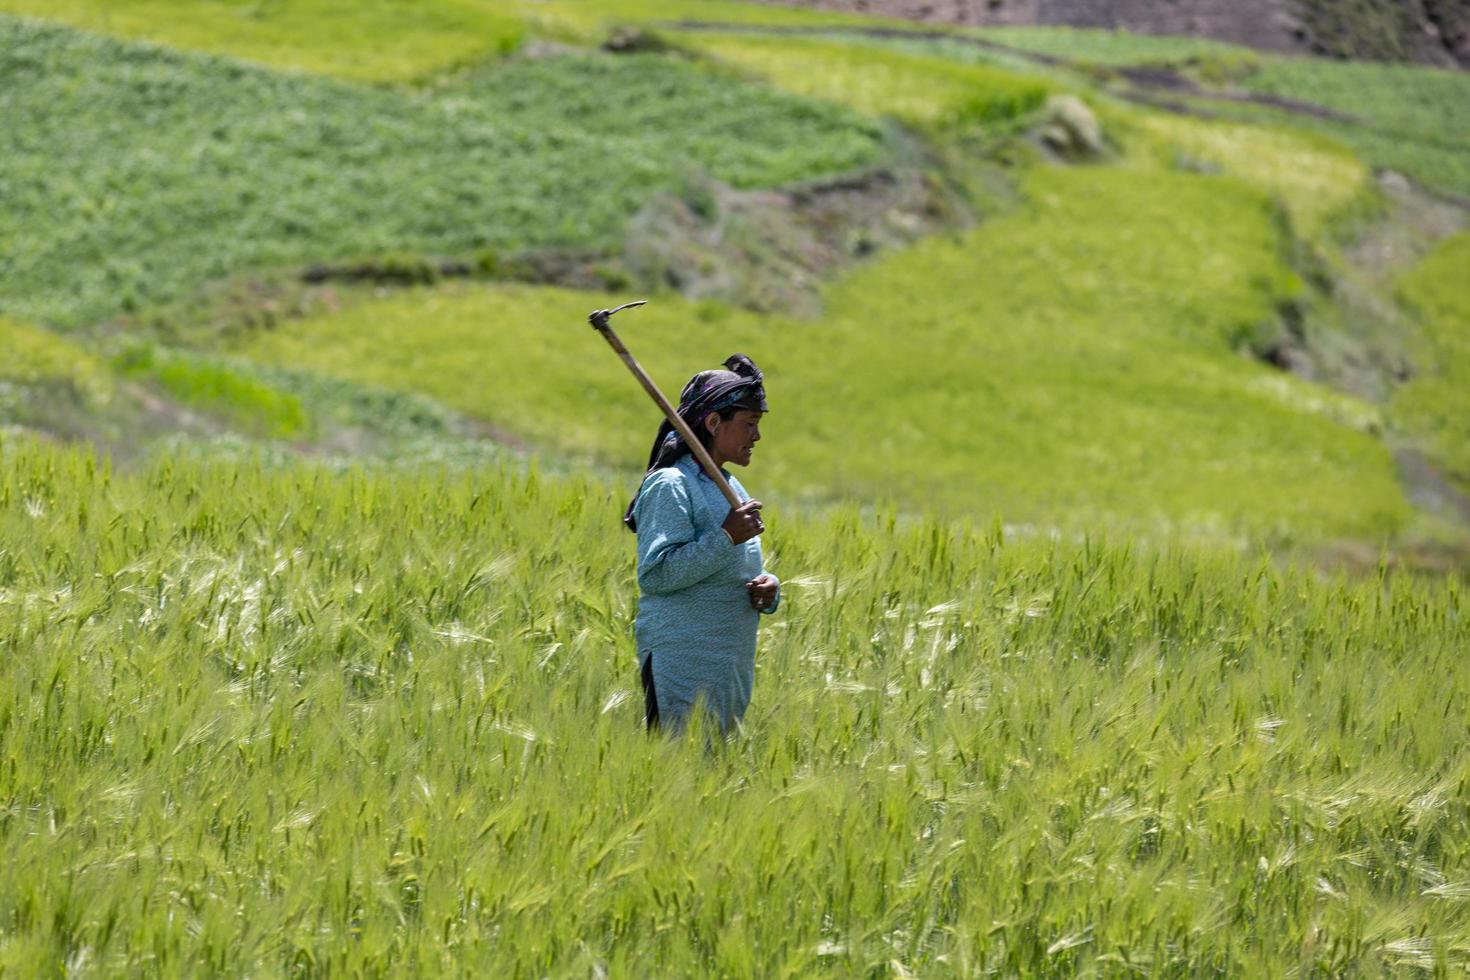 komic village, india, 2019- vrouw oogst gewassen in een veld foto